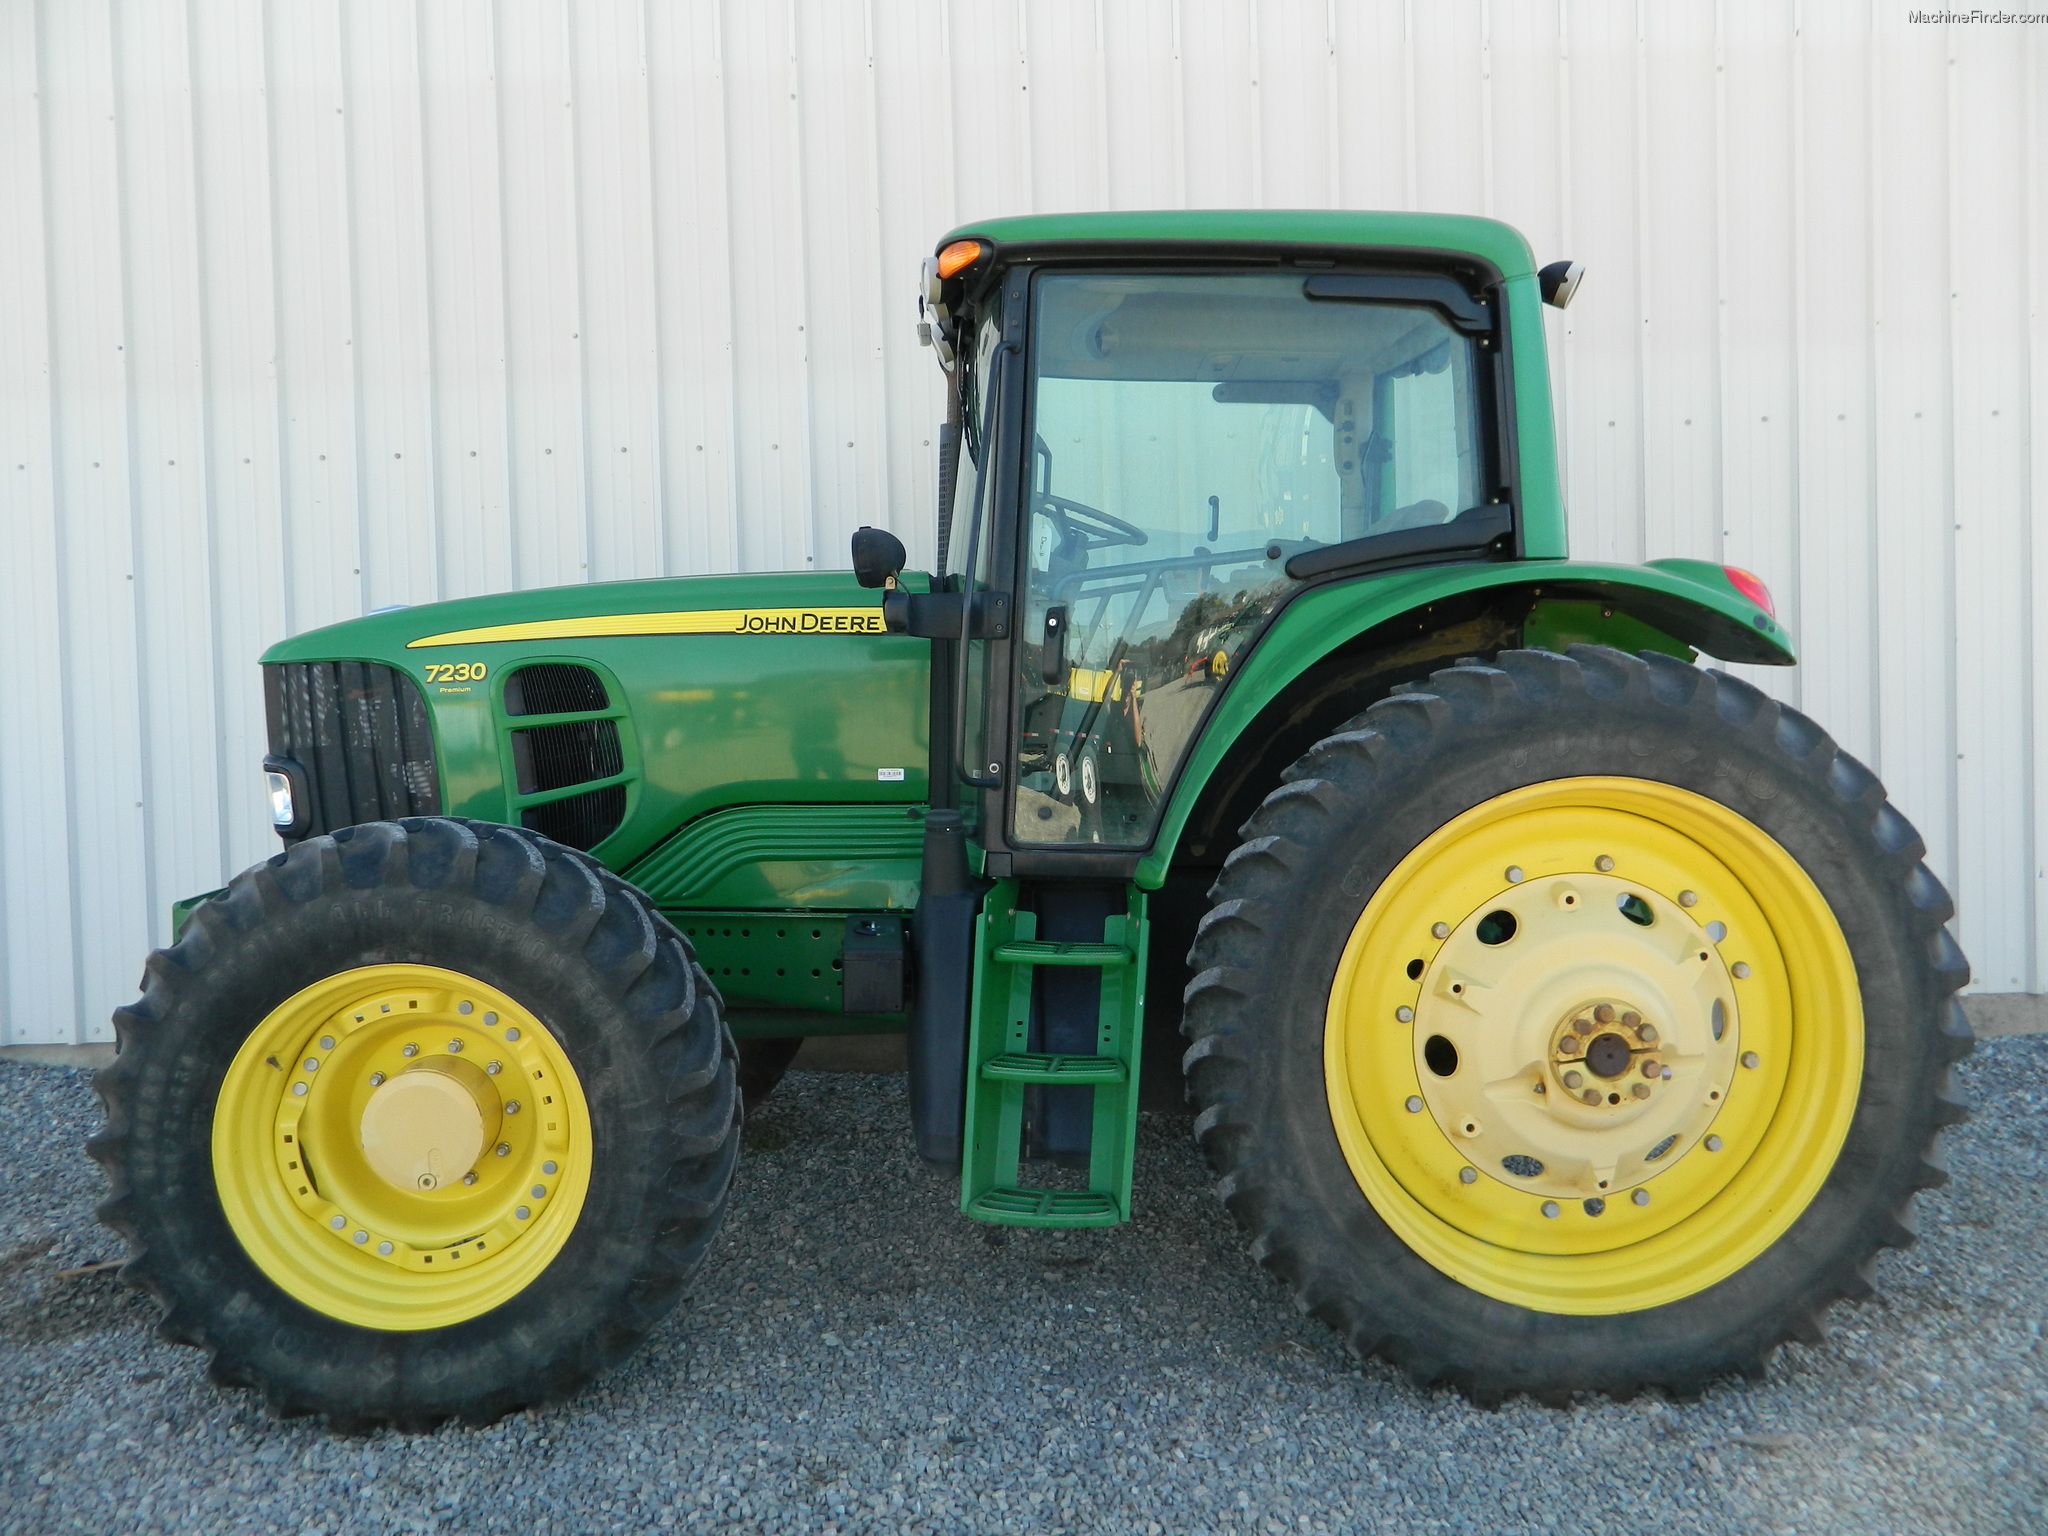 2012 John Deere 7230 Tractors - Row Crop (+100hp) - John Deere ...